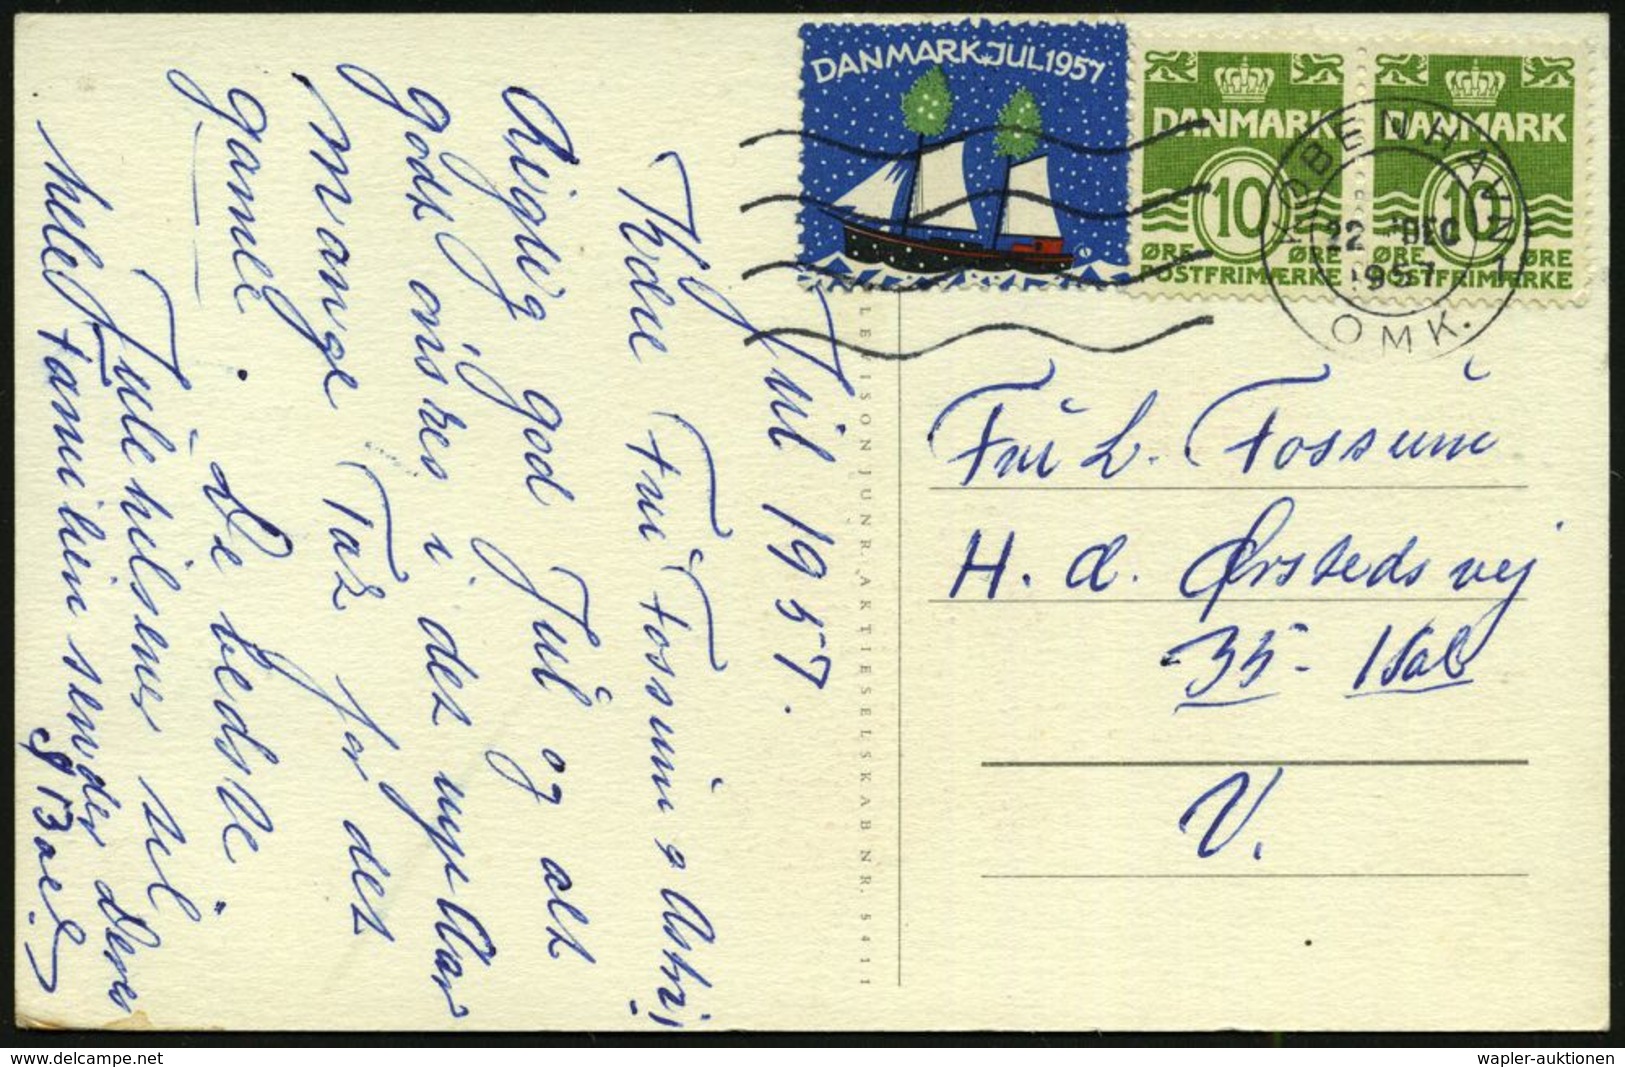 TUBERKULOSE / TBC-VORSORGE : DÄNEMARK 1957 (22.12.) 10 Öre Freimarke, Paar + Weihnachts-Tbc-Spendenmarke (Segelschiff) A - Maladies